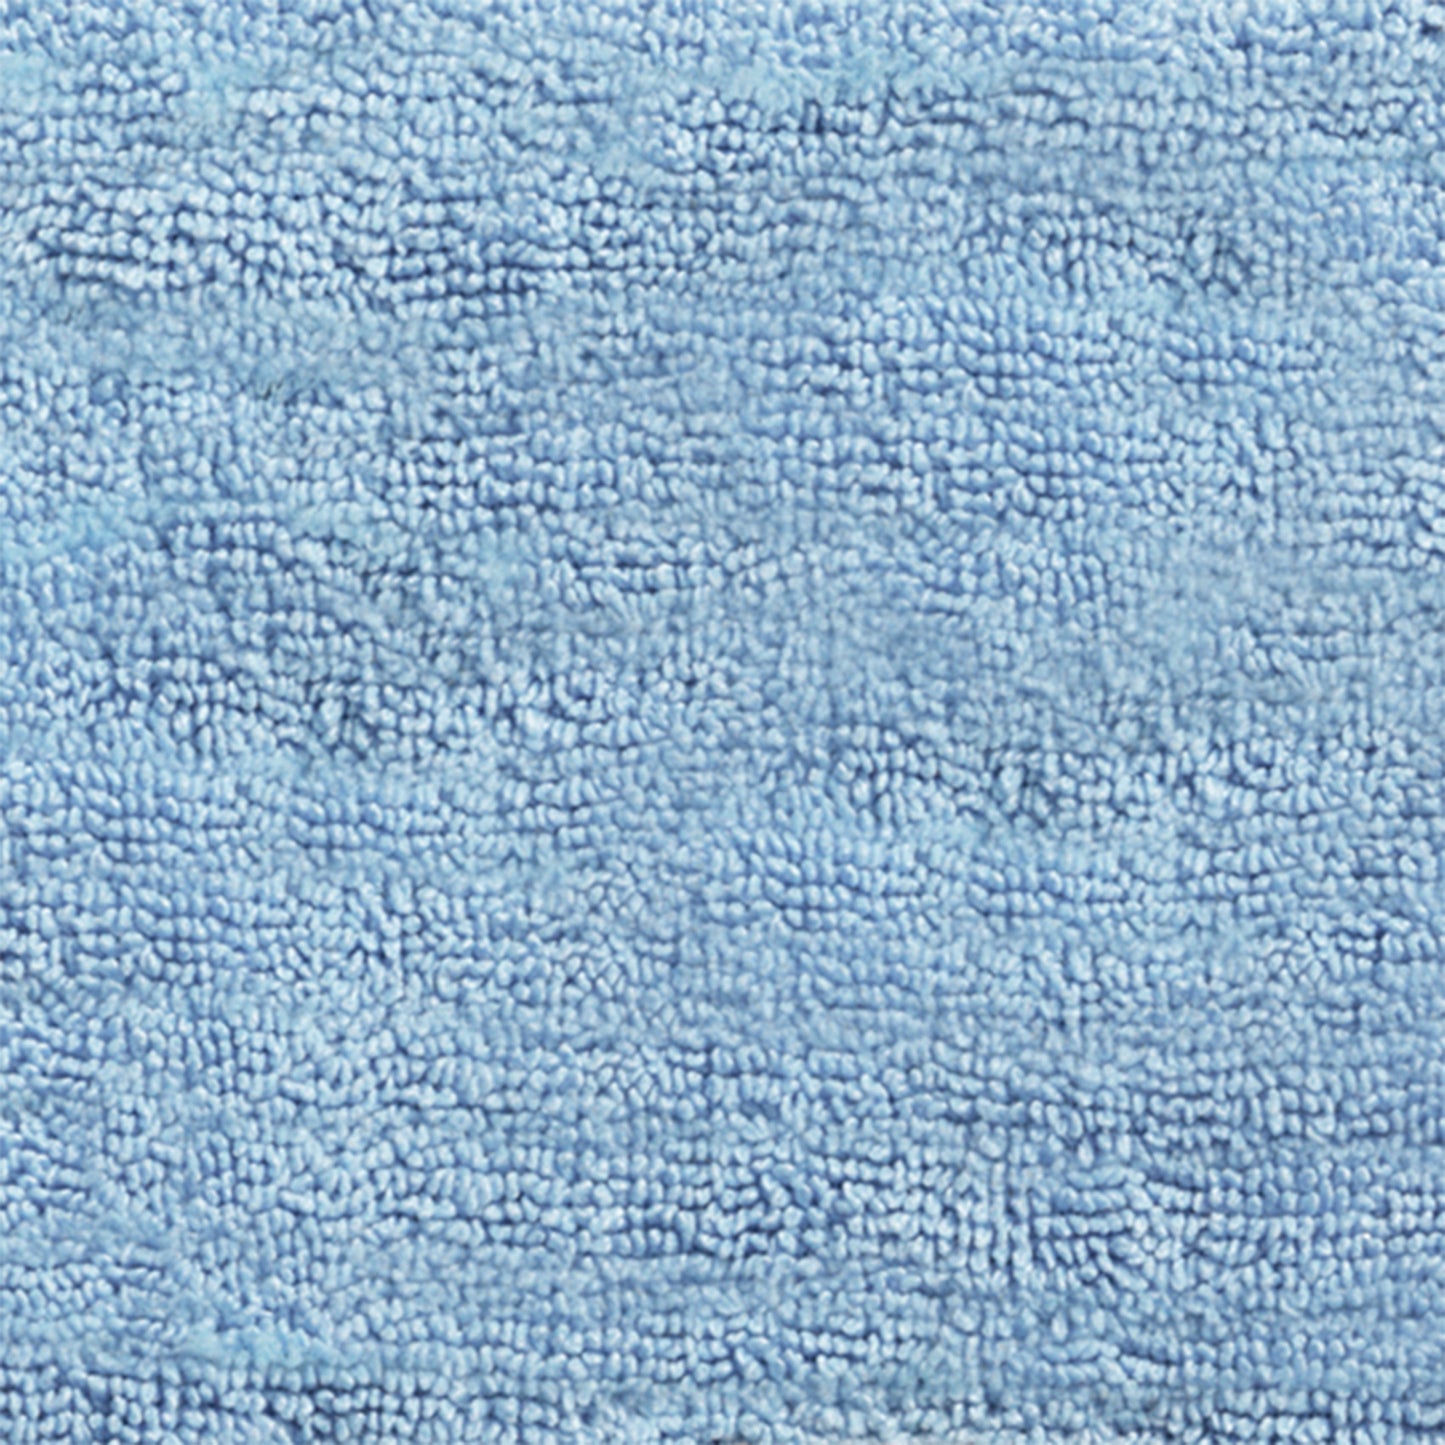 Mopa microfibra azul TRIWET para TRILOGY S, altamente absorvente, adequada para lavagem ou secagem de superfícies lisas.